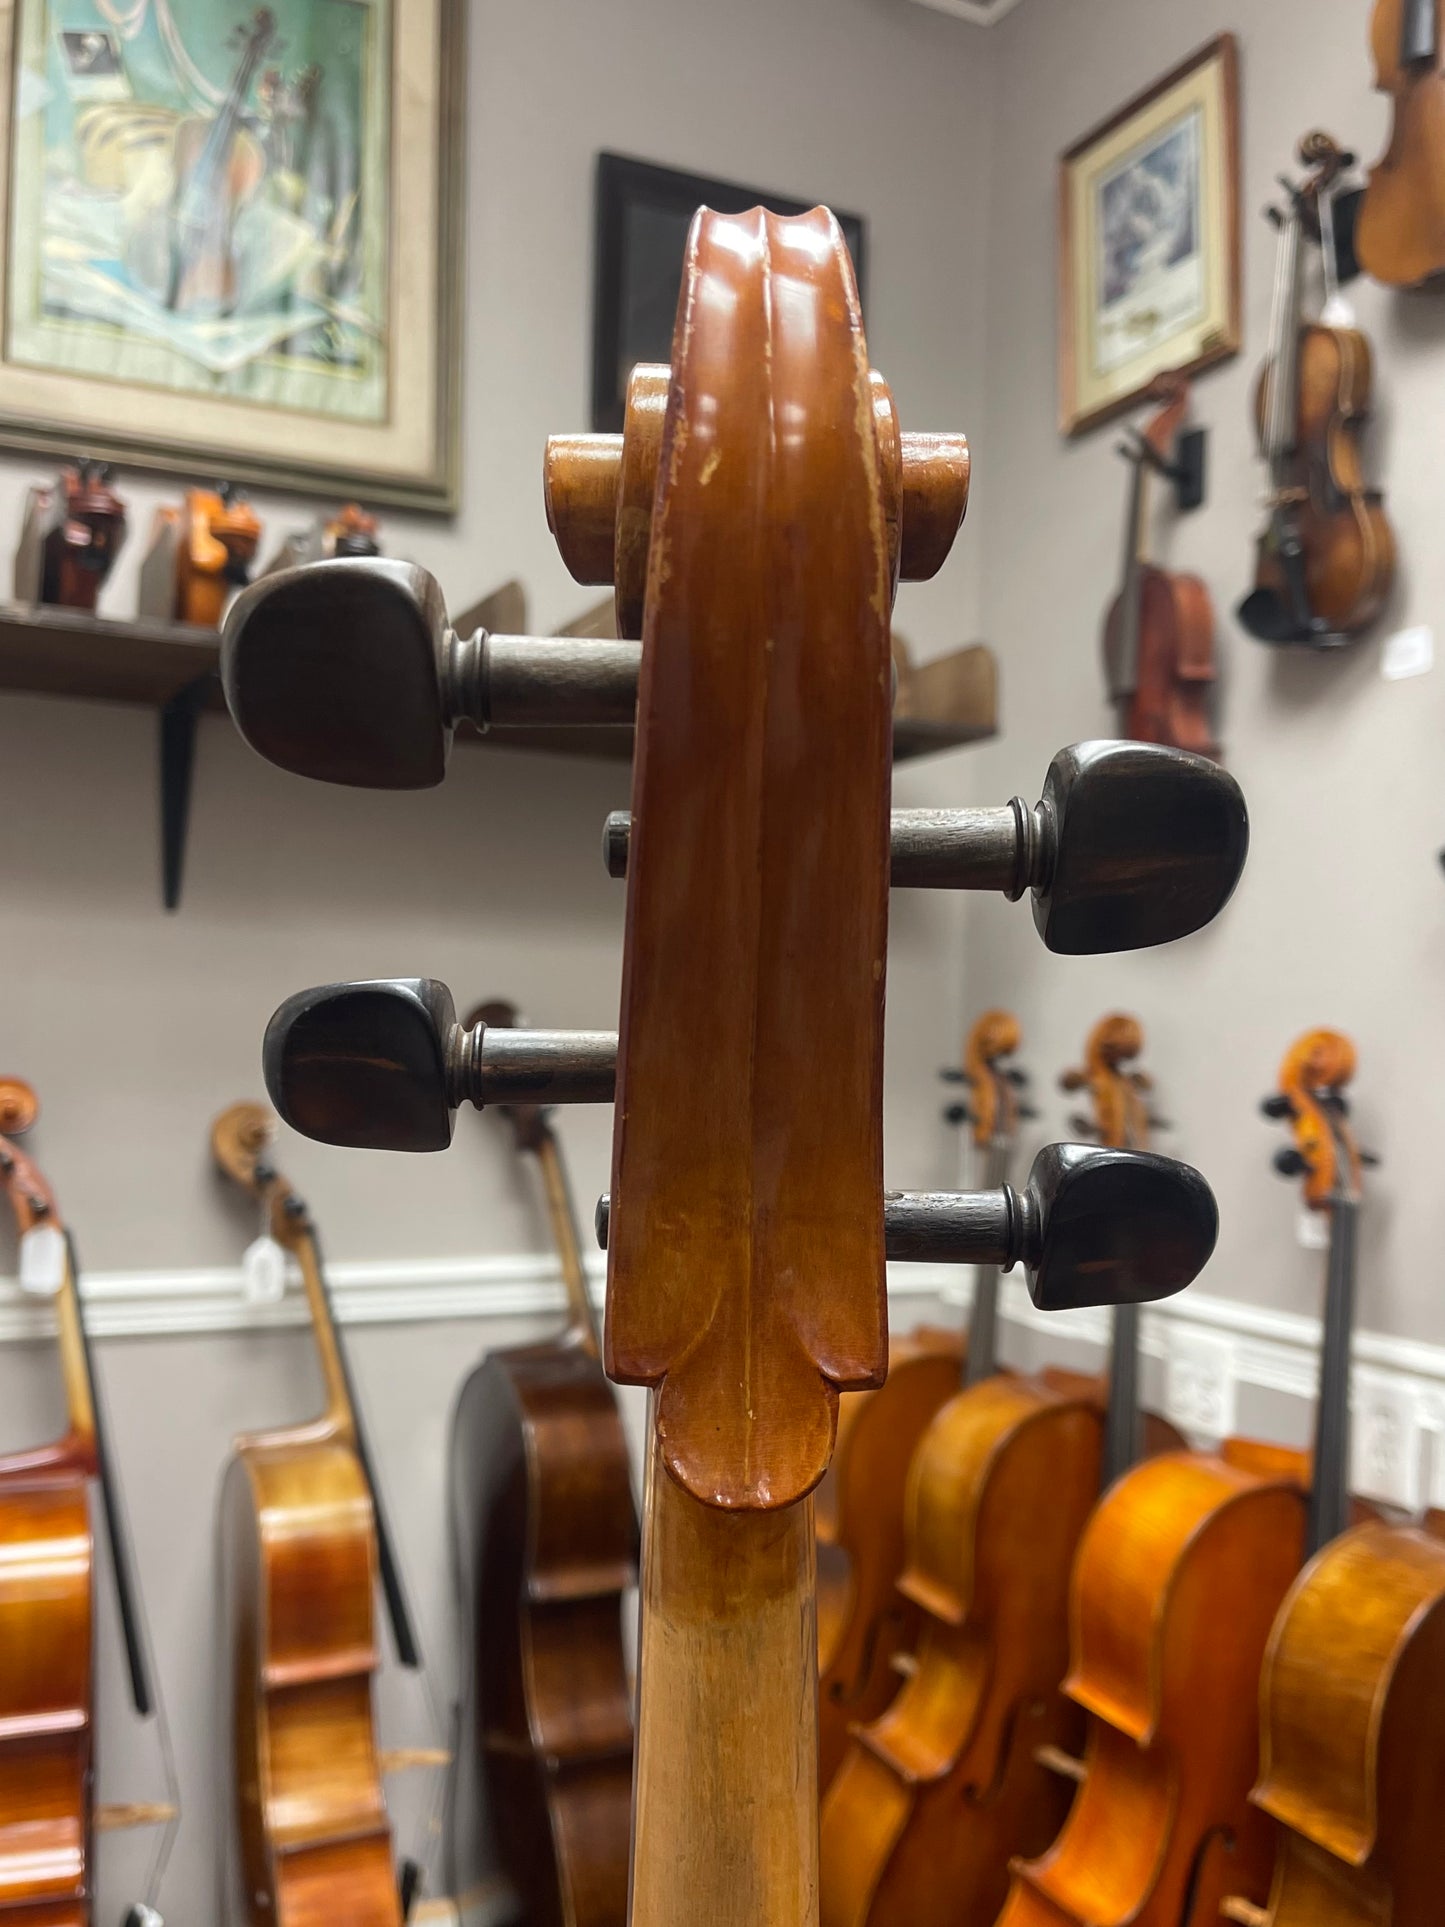 Liandro DiVacenza Strad Model Cello 300